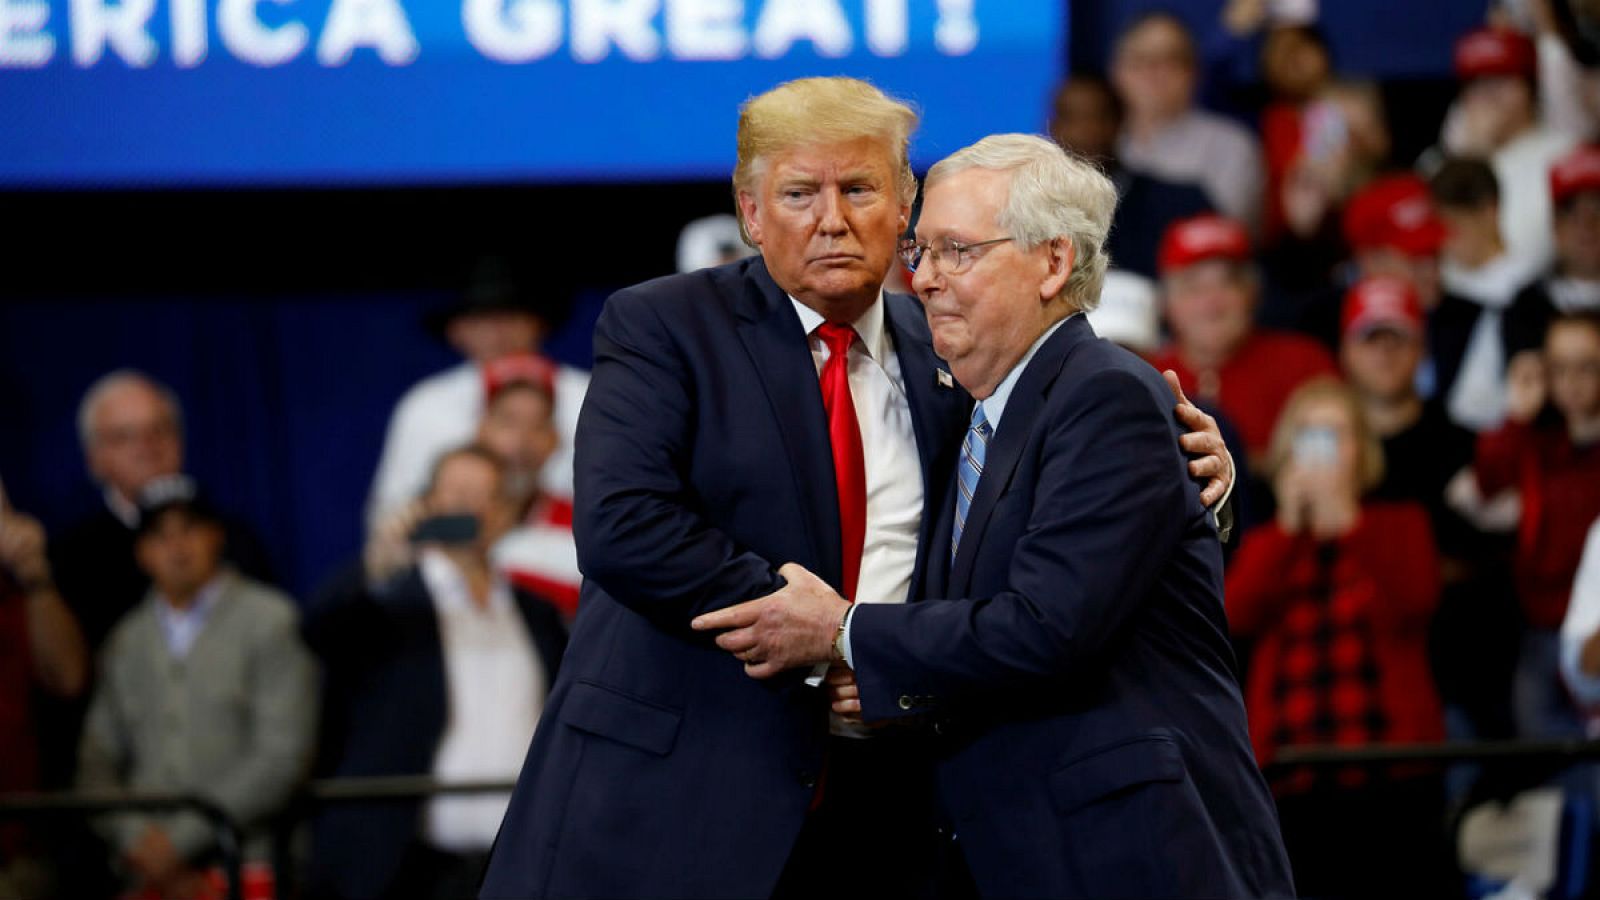 El senador Mitch McConnell abraza al presidente de Estados Unidos, Donald Trump, en un evento en Lexington, Kentucky.